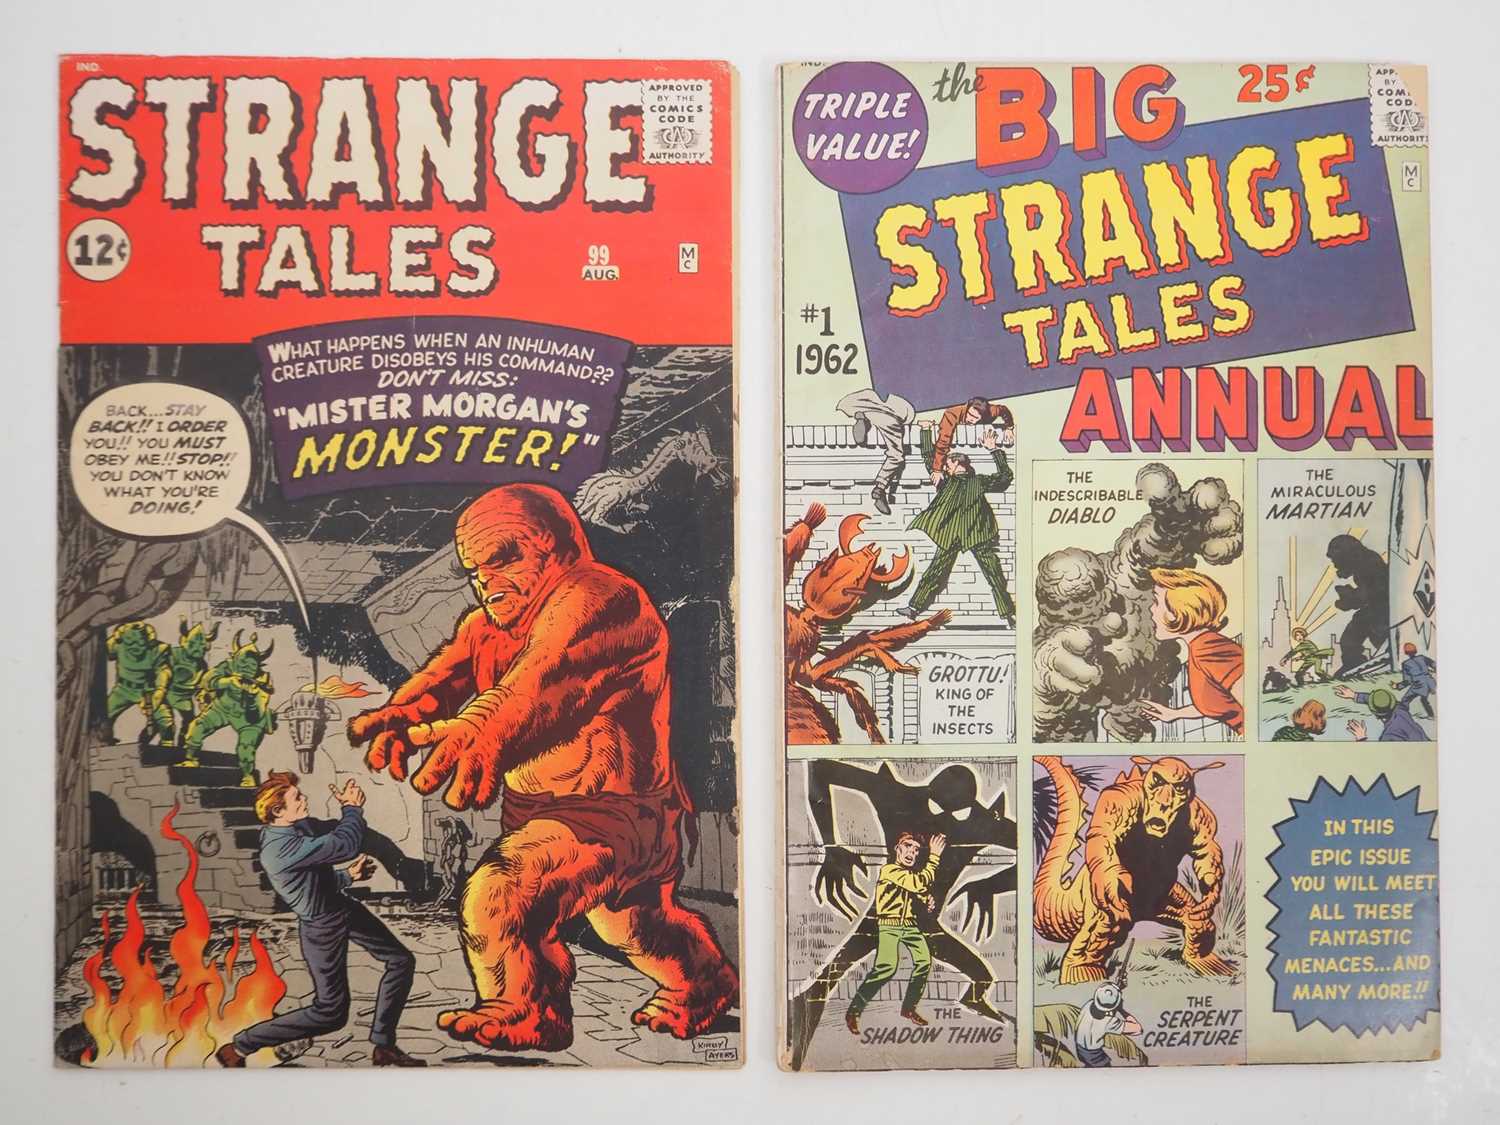 STRANGE TALES #99 + STRANGE TALES ANNUAL #1 (2 in Lot) - (1962 - MARVEL) - Strange Tales Annual #1